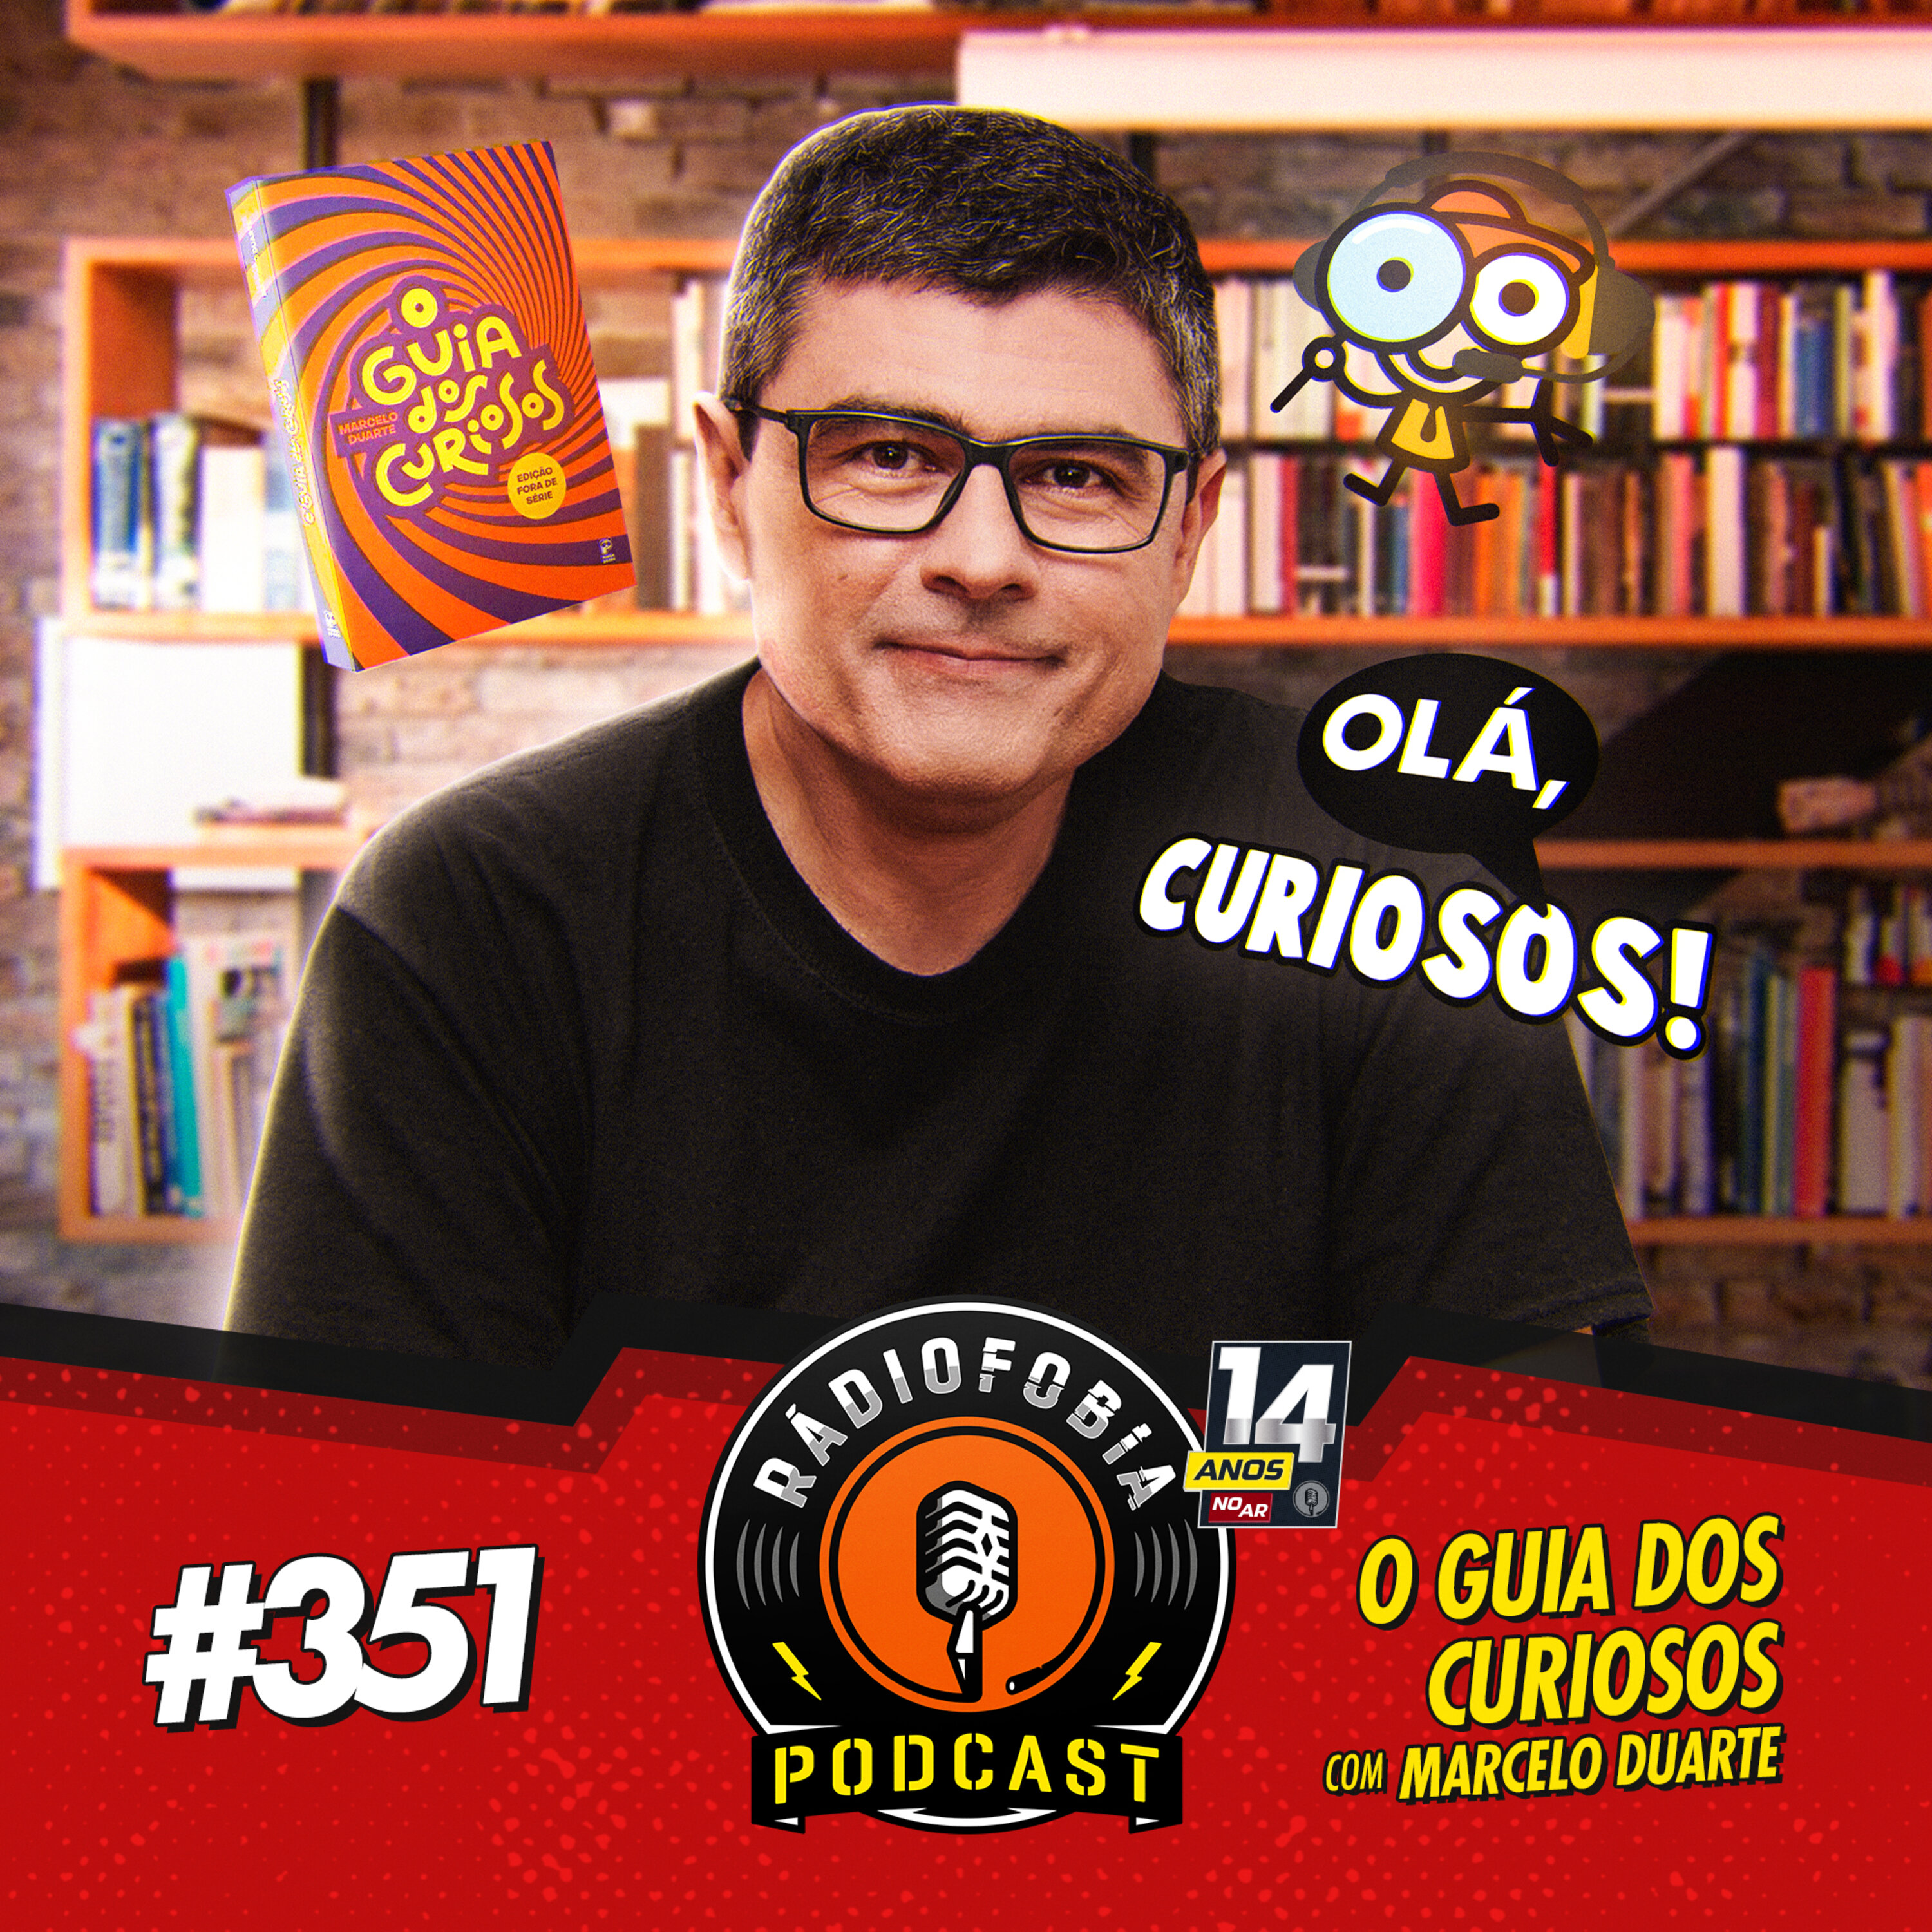 RADIOFOBIA 351 - O Guia dos Curiosos, com Marcelo Duarte